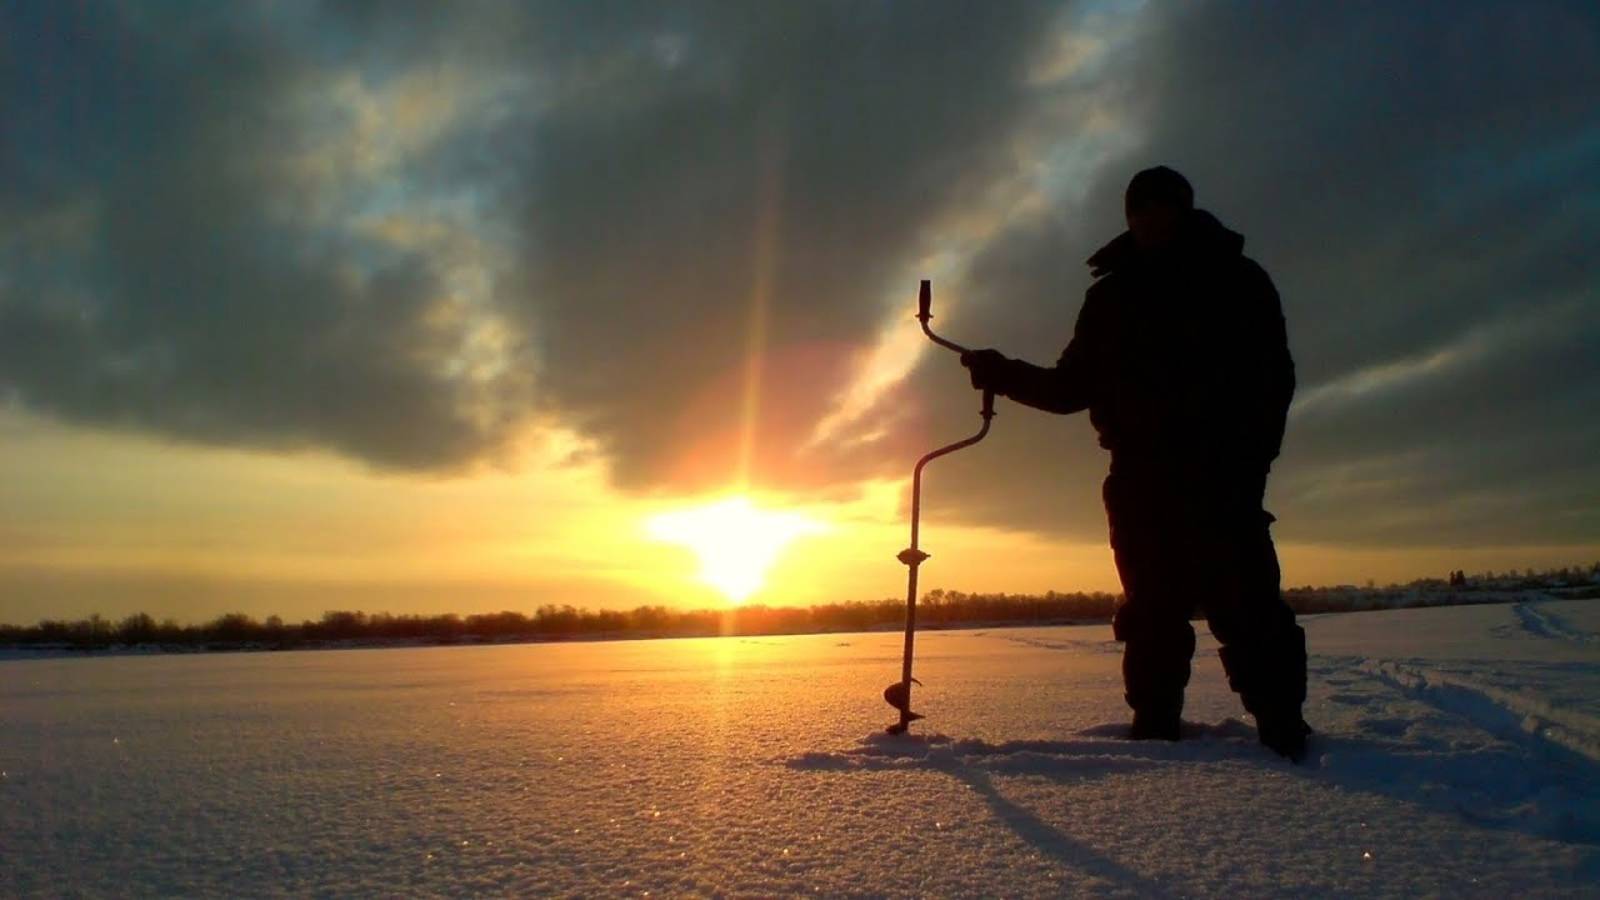 Рыбалка на Булуз на озере Иван. Нас поймал рыбнадзор.#рыбалка #зимняяловлярыбы #rutube